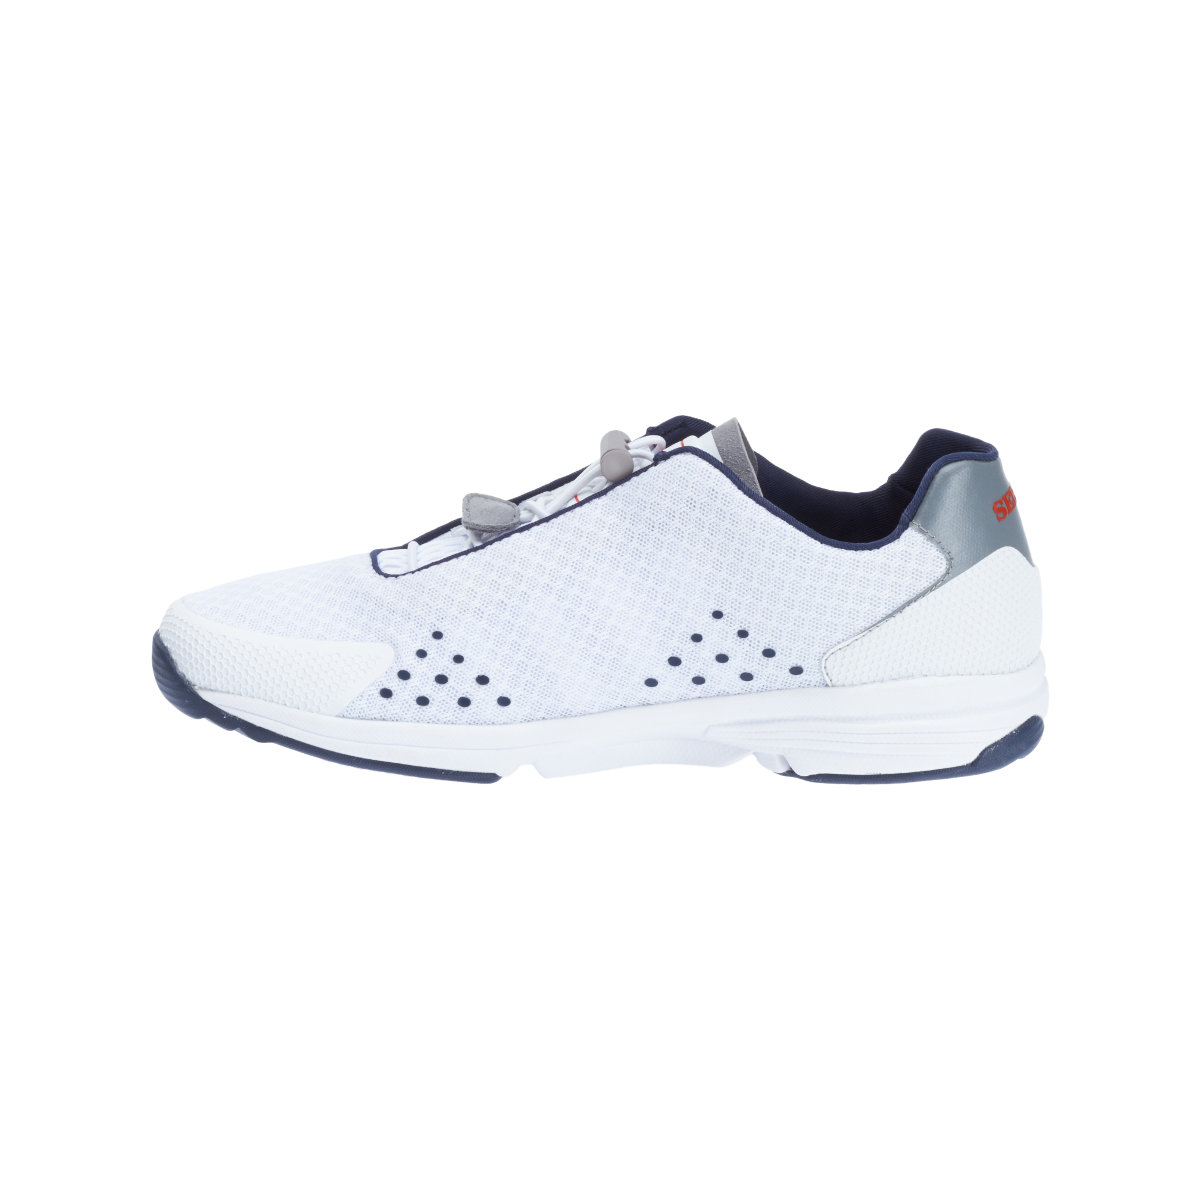 Sebago Cyphon Sea Sport chaussures à voile femme blanche, taille EU 38,5 (US 8)